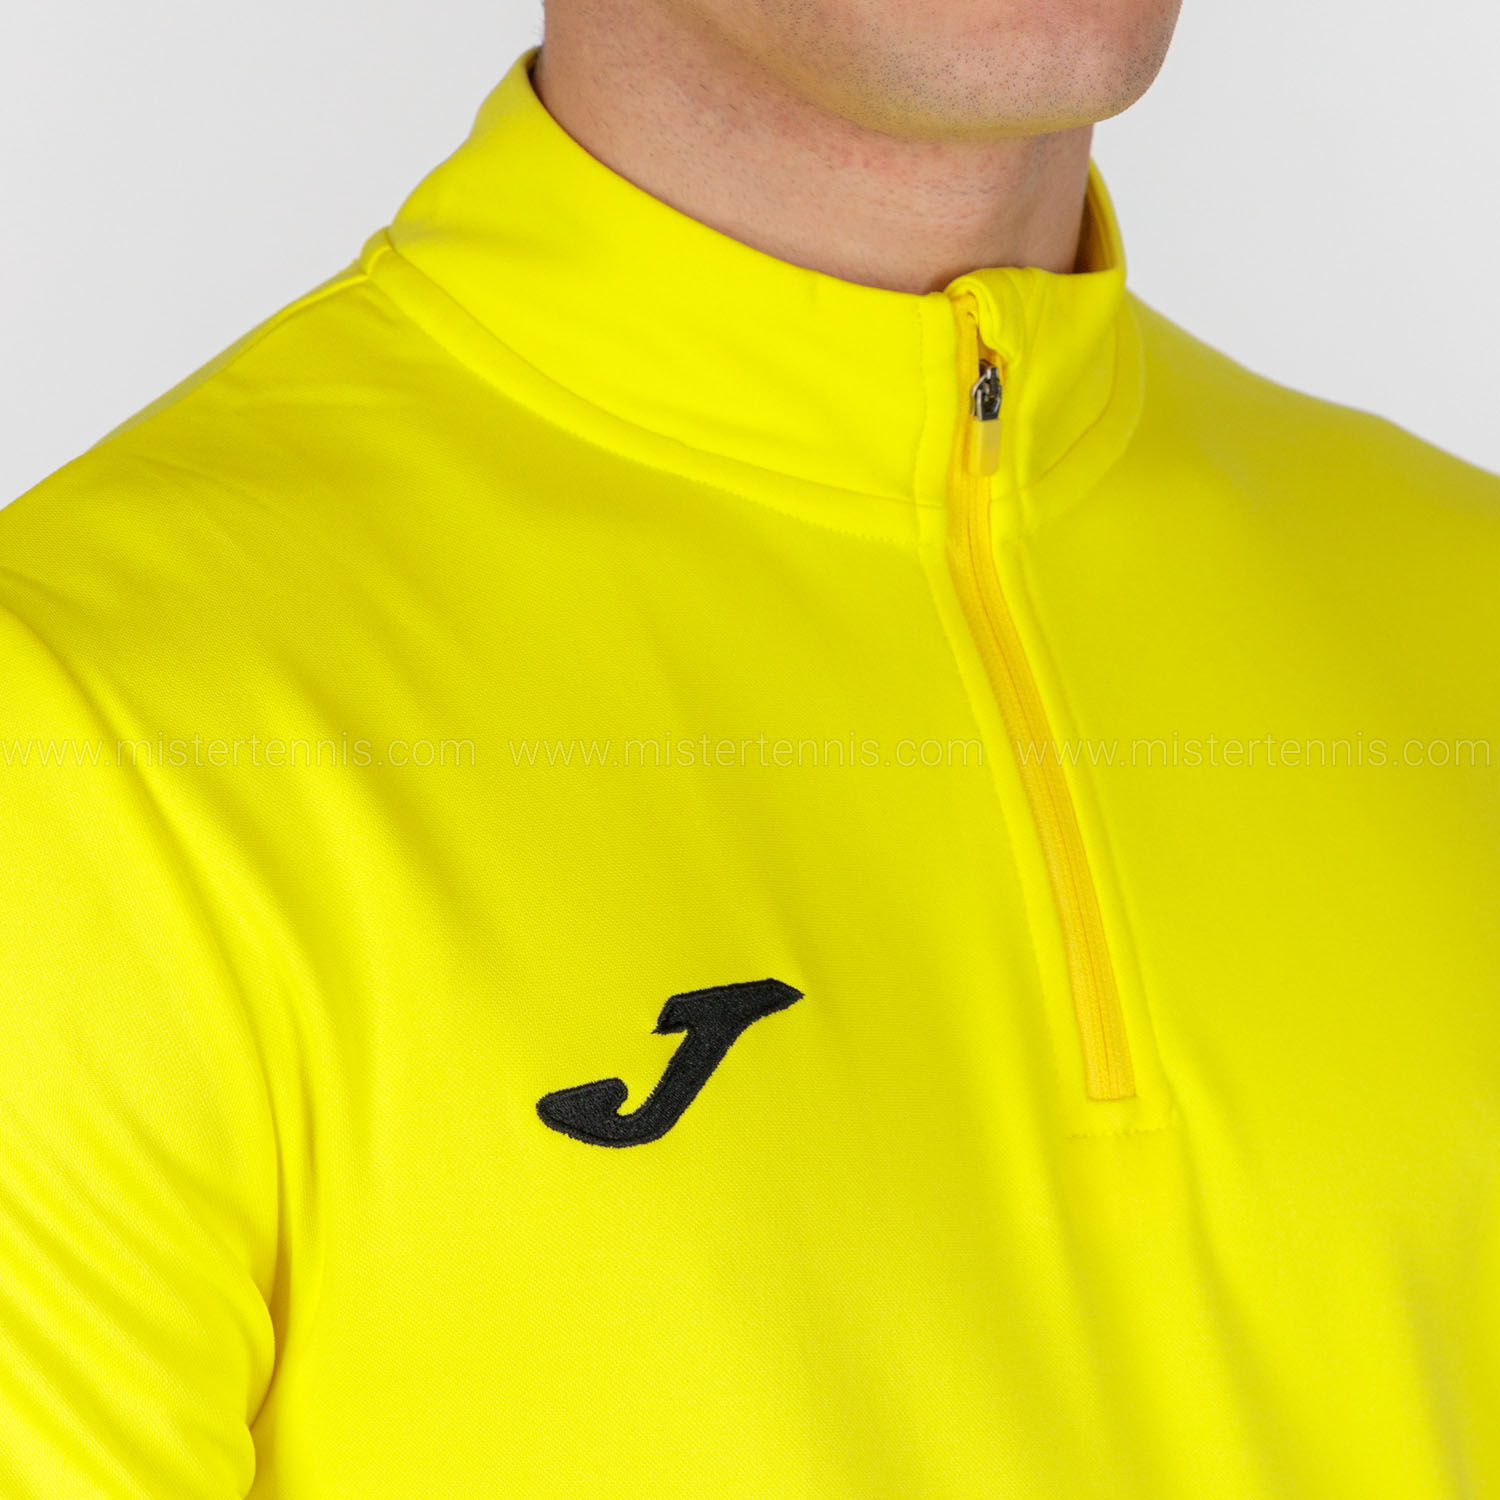 Joma Winner II Shirt - Yellow